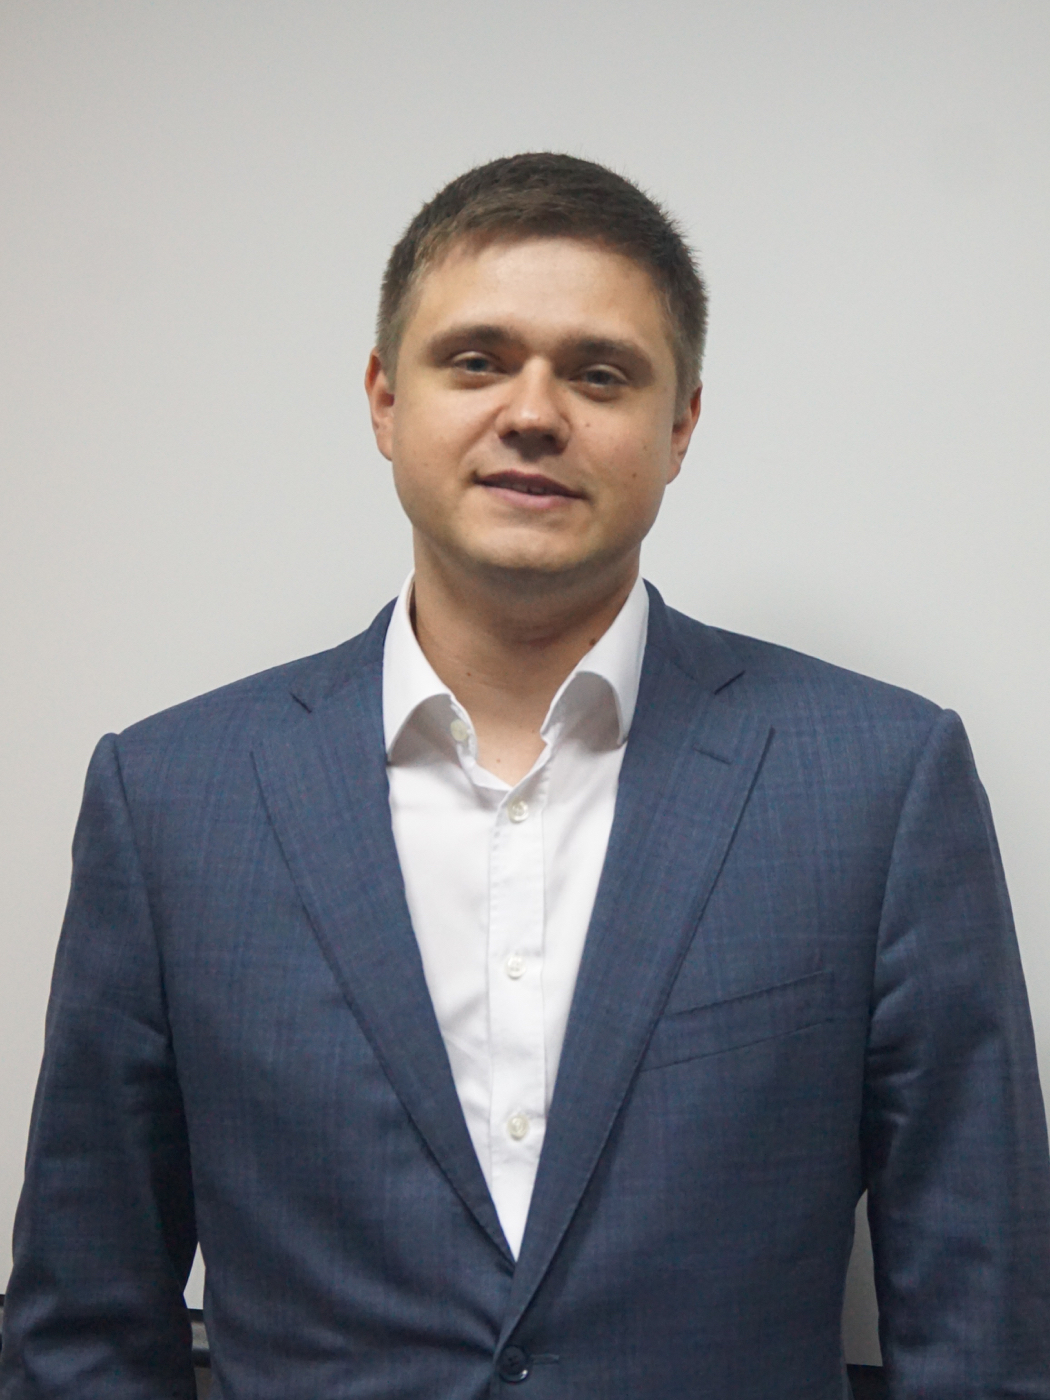 Шагардин Дмитрий Викторович — исполнительный директор управляющей компании «БСПБ Капитал»